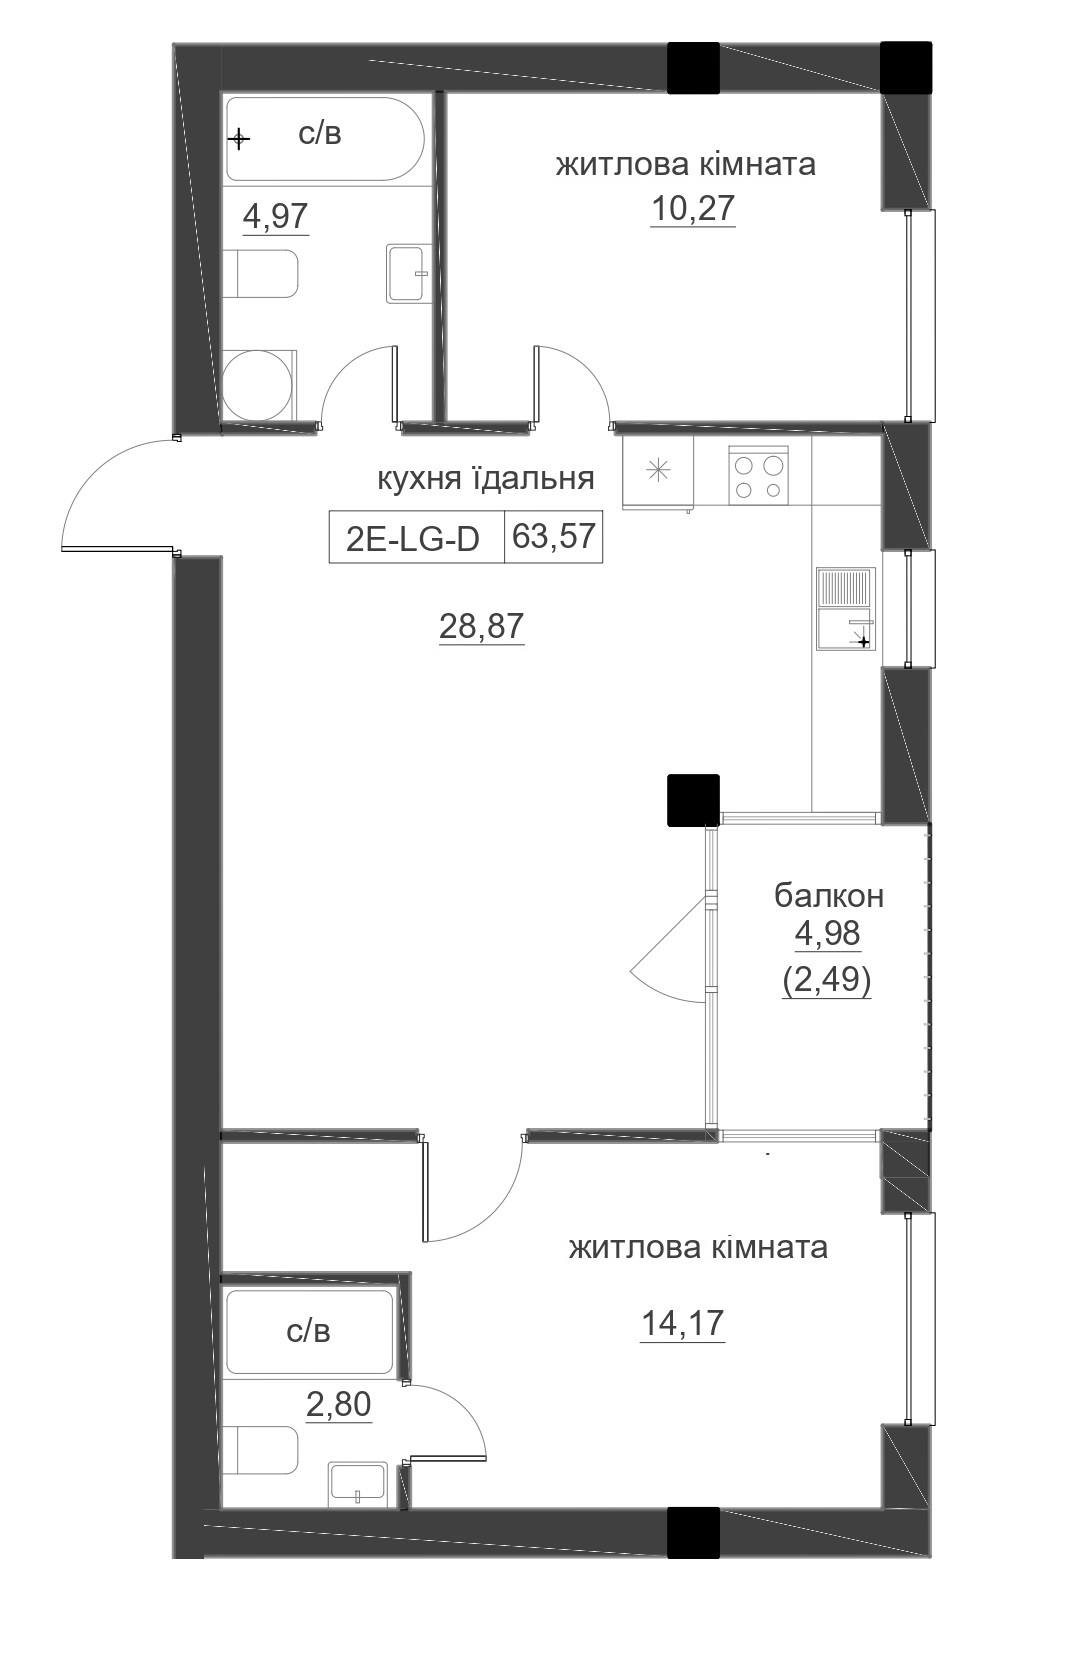 Планування 2-к квартира площею 63.57м2, LR-005-08/0006.